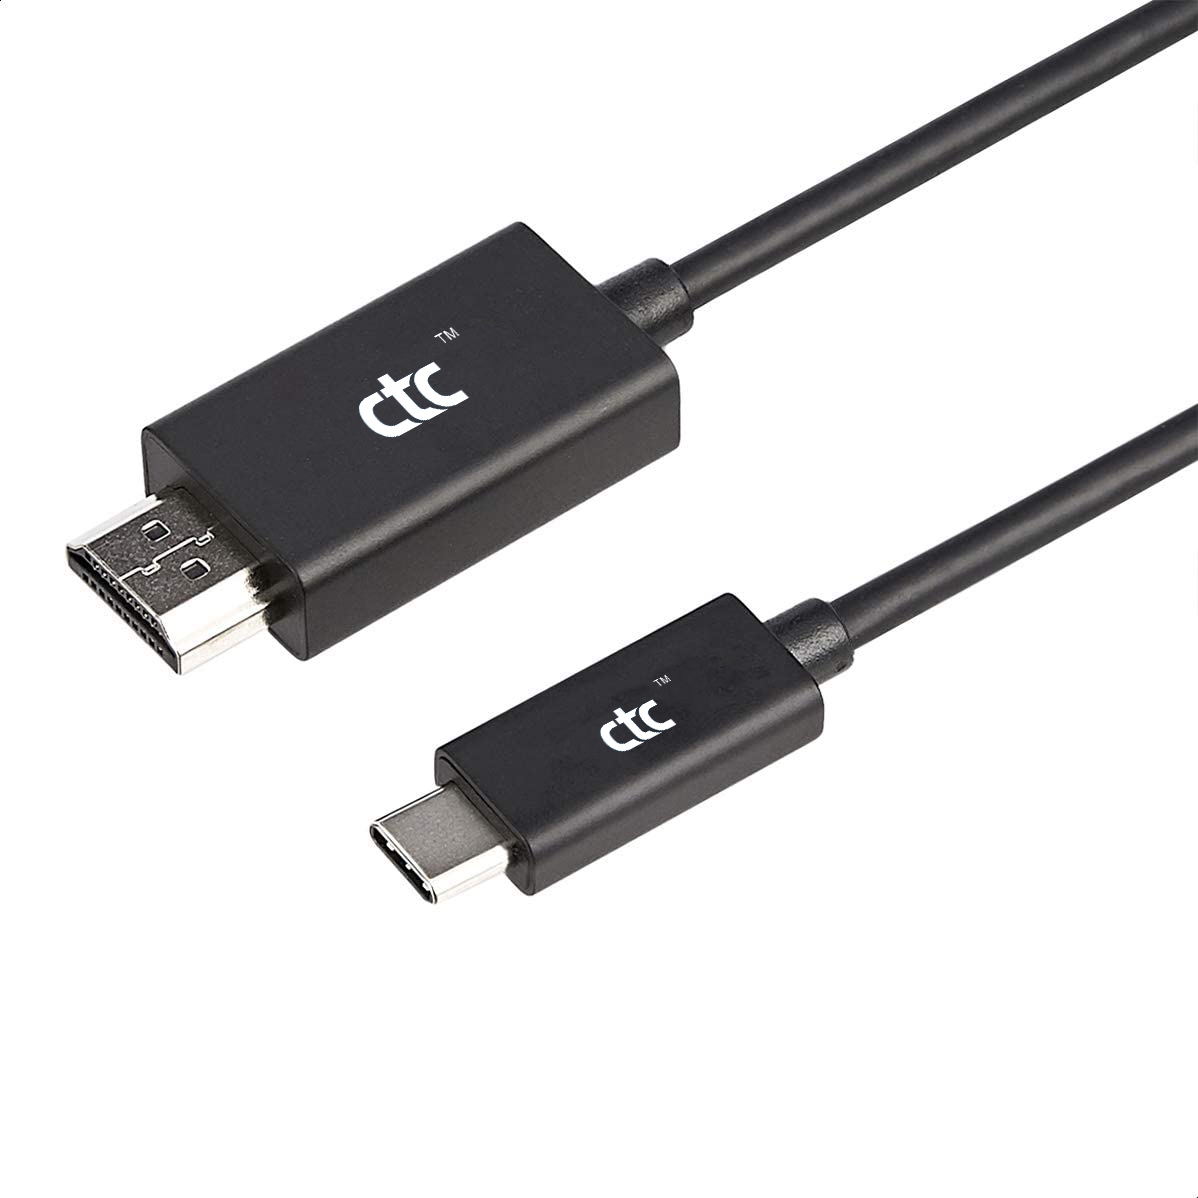 A C típusú USB - HDMI új élményt nyújt